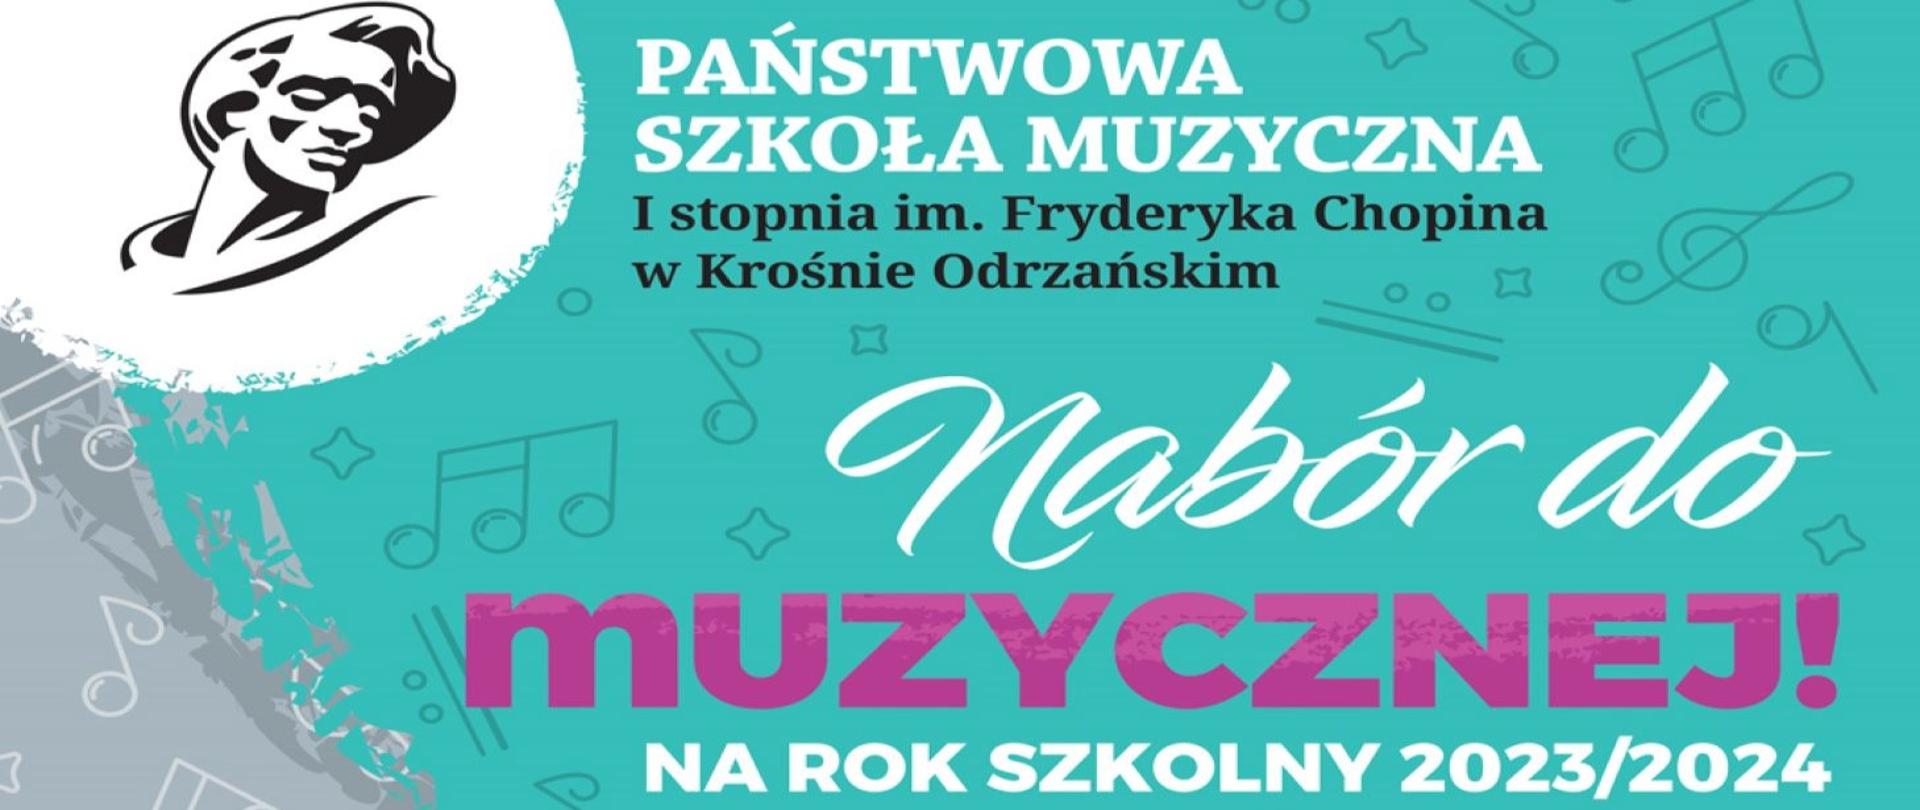 
Baner utrzymany jest w kolorystyce seledynowo - szaro - różowej, z głową Fryderyka Chopina, ze swobodnie rozmieszczonymi znakami muzycznymi. Zapowiada on nabór, na rok szkolny 2023/2024 do PSM w Krośnie Odrzańskim.
